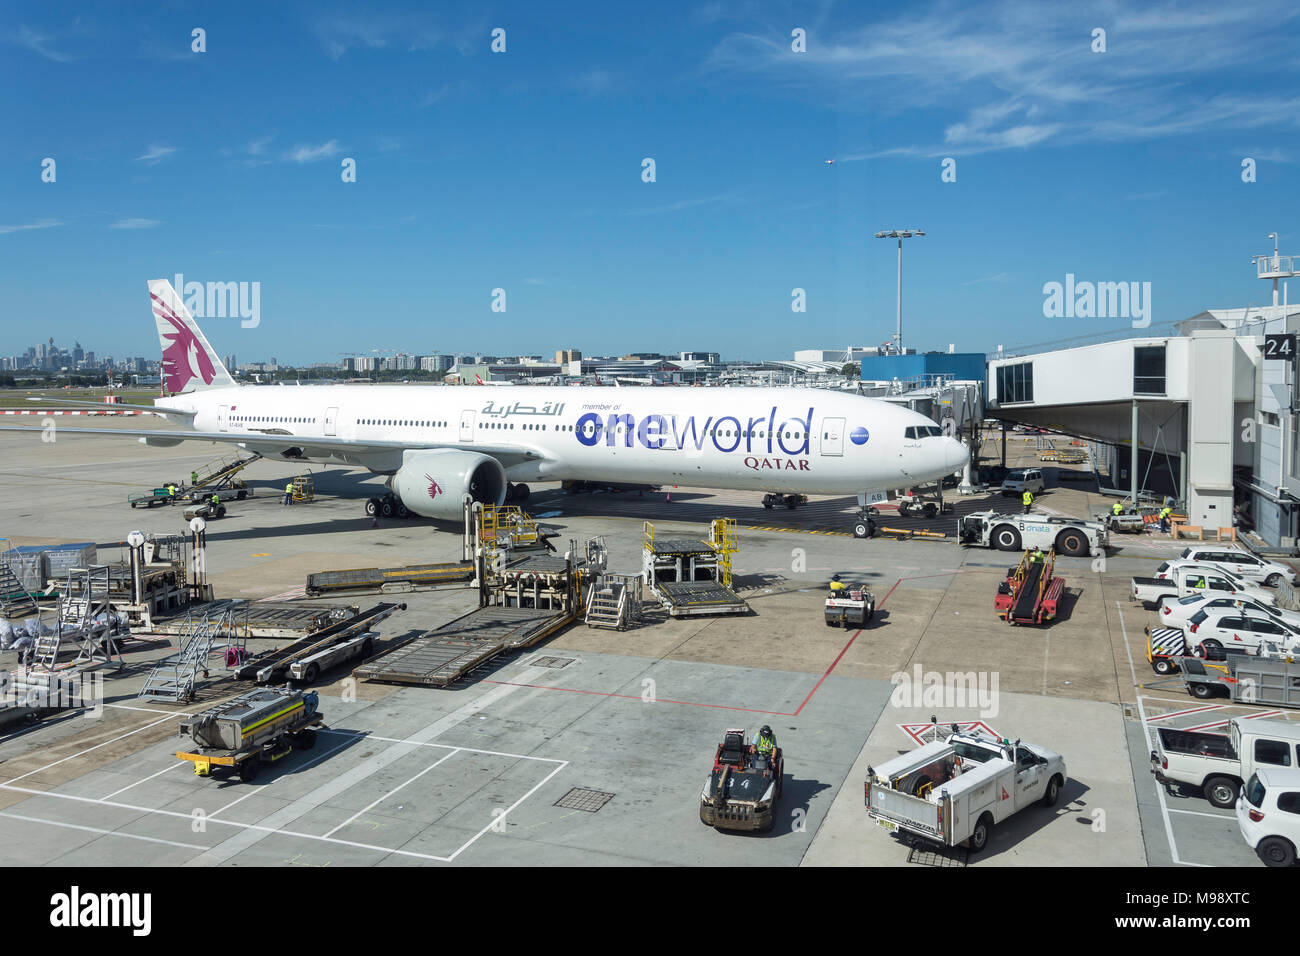 Qatar Airways Boeing 777 à l'aéroport de Sydney Kingsford Smith, Mascot, Sydney, New South Wales, Australia Banque D'Images